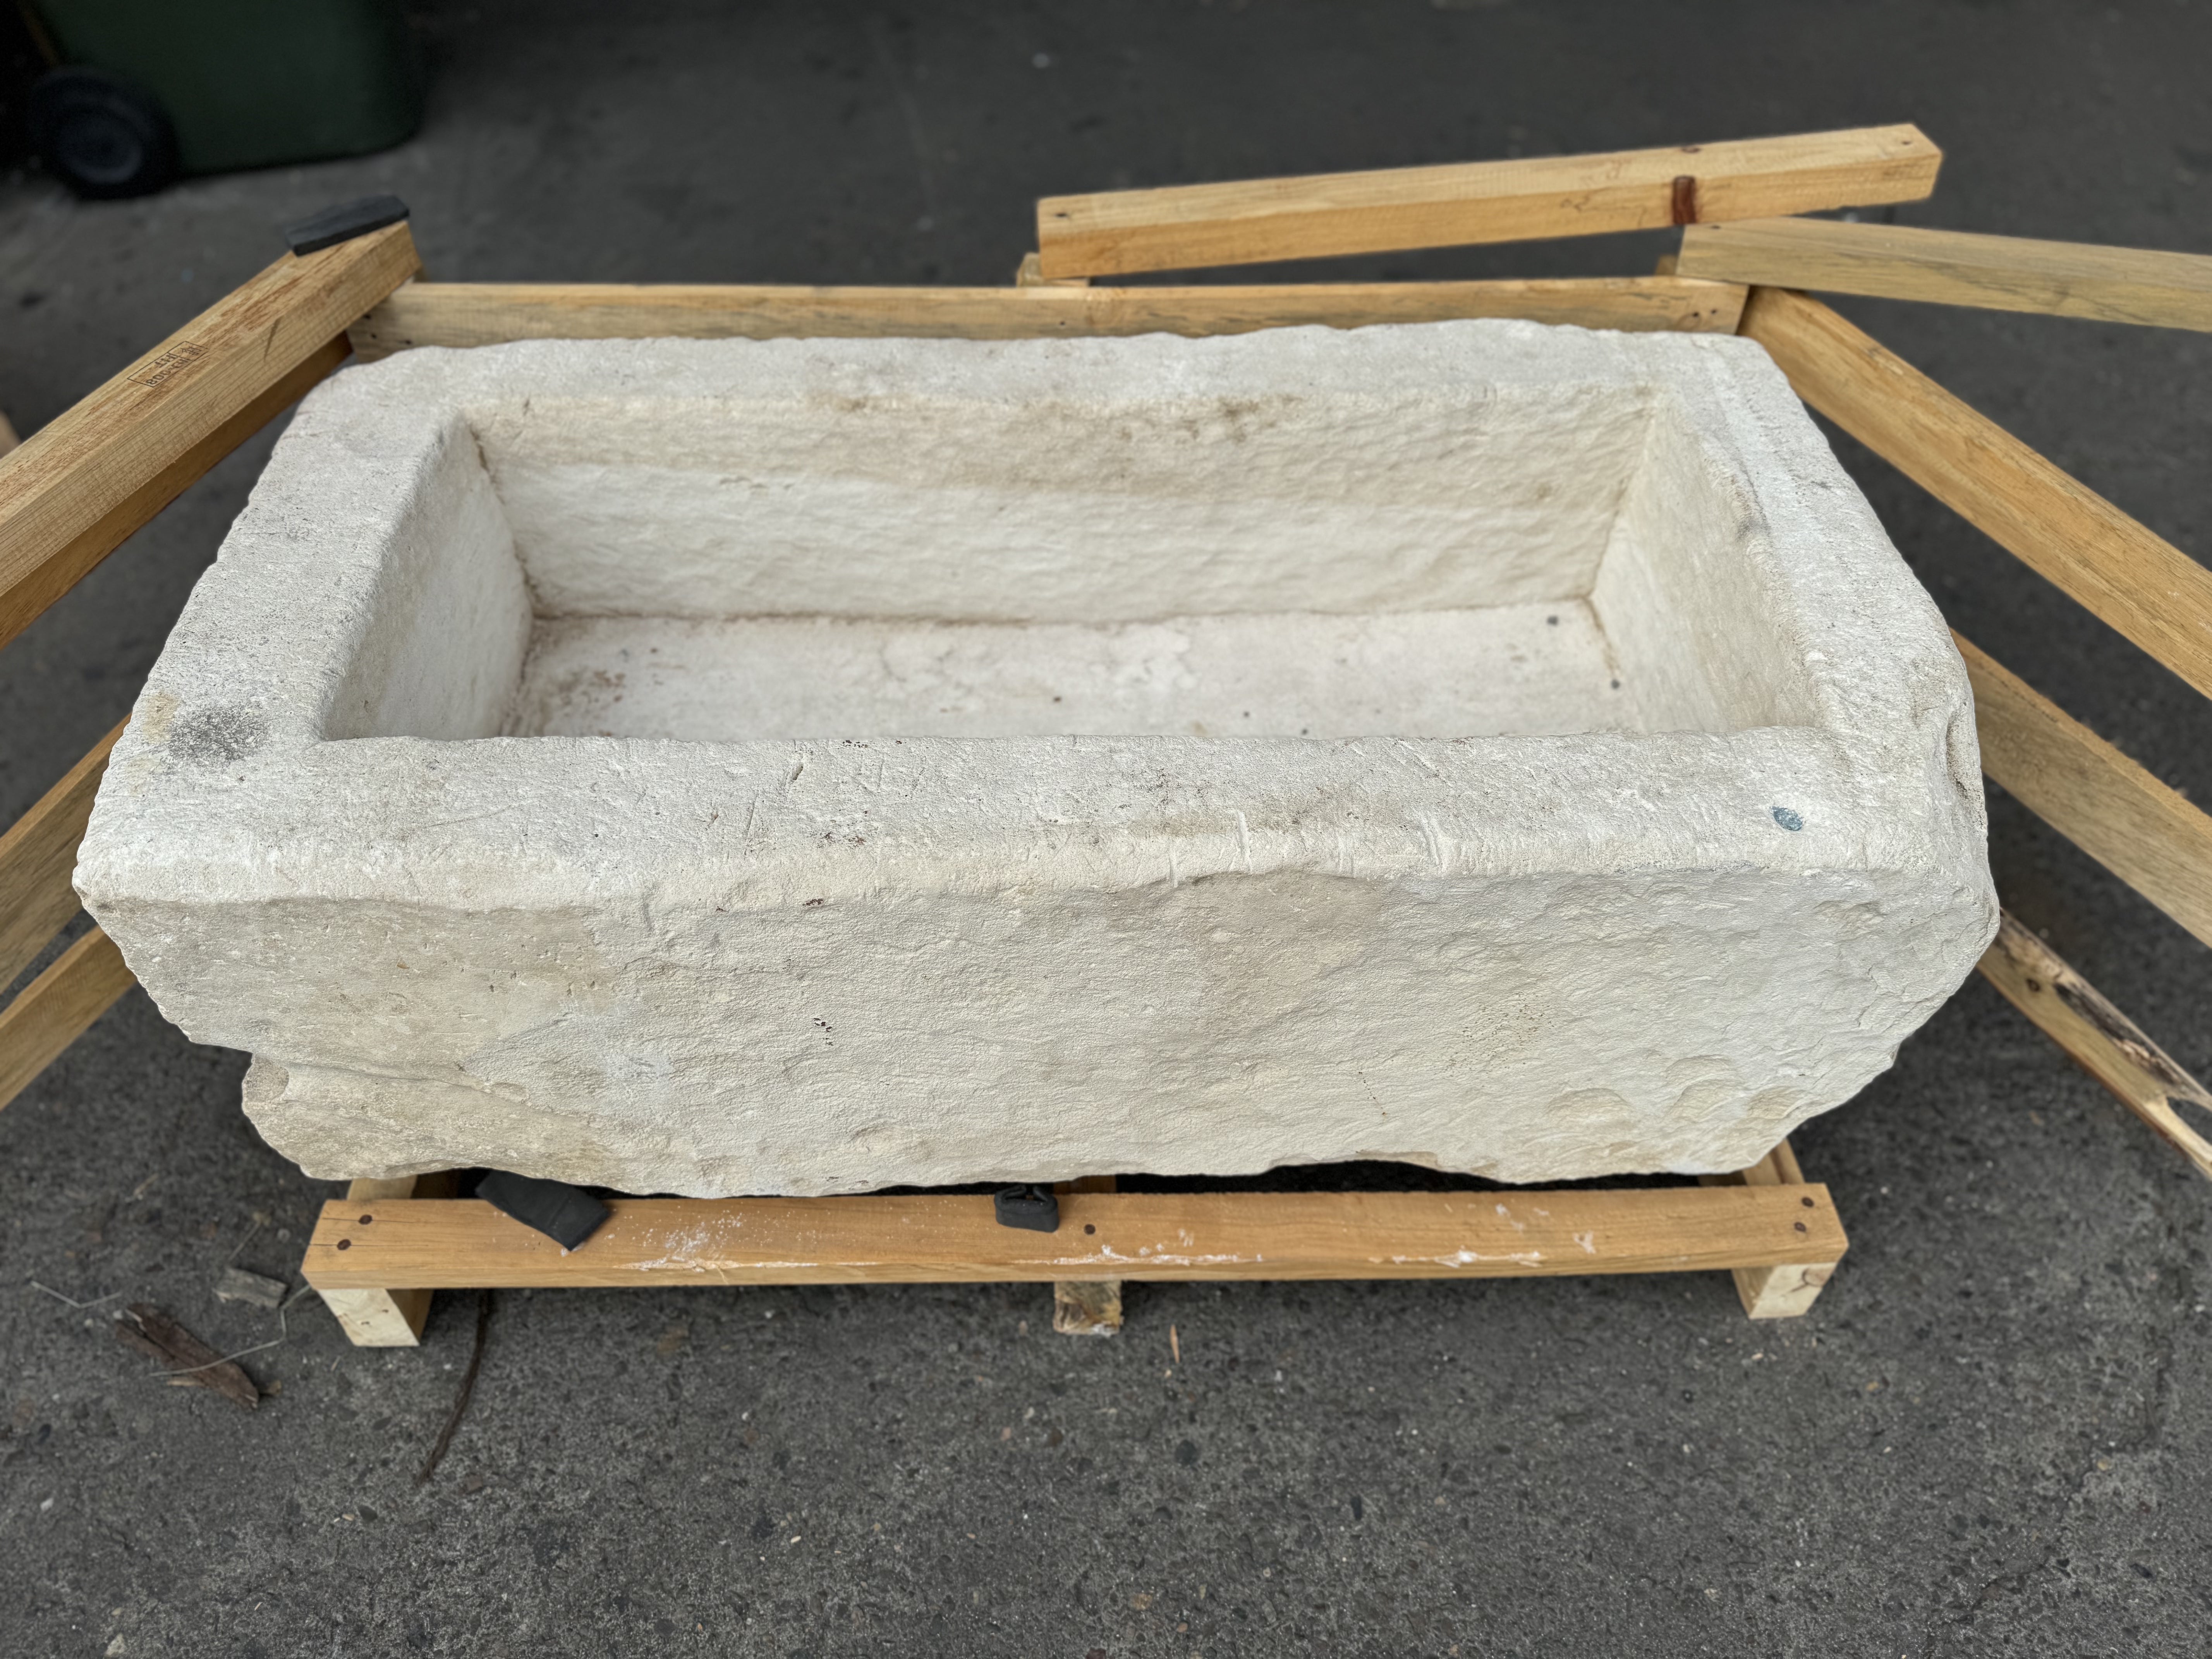 Hand Chiseled Limestone Plantar Box - 109 x 55 x 39 cm